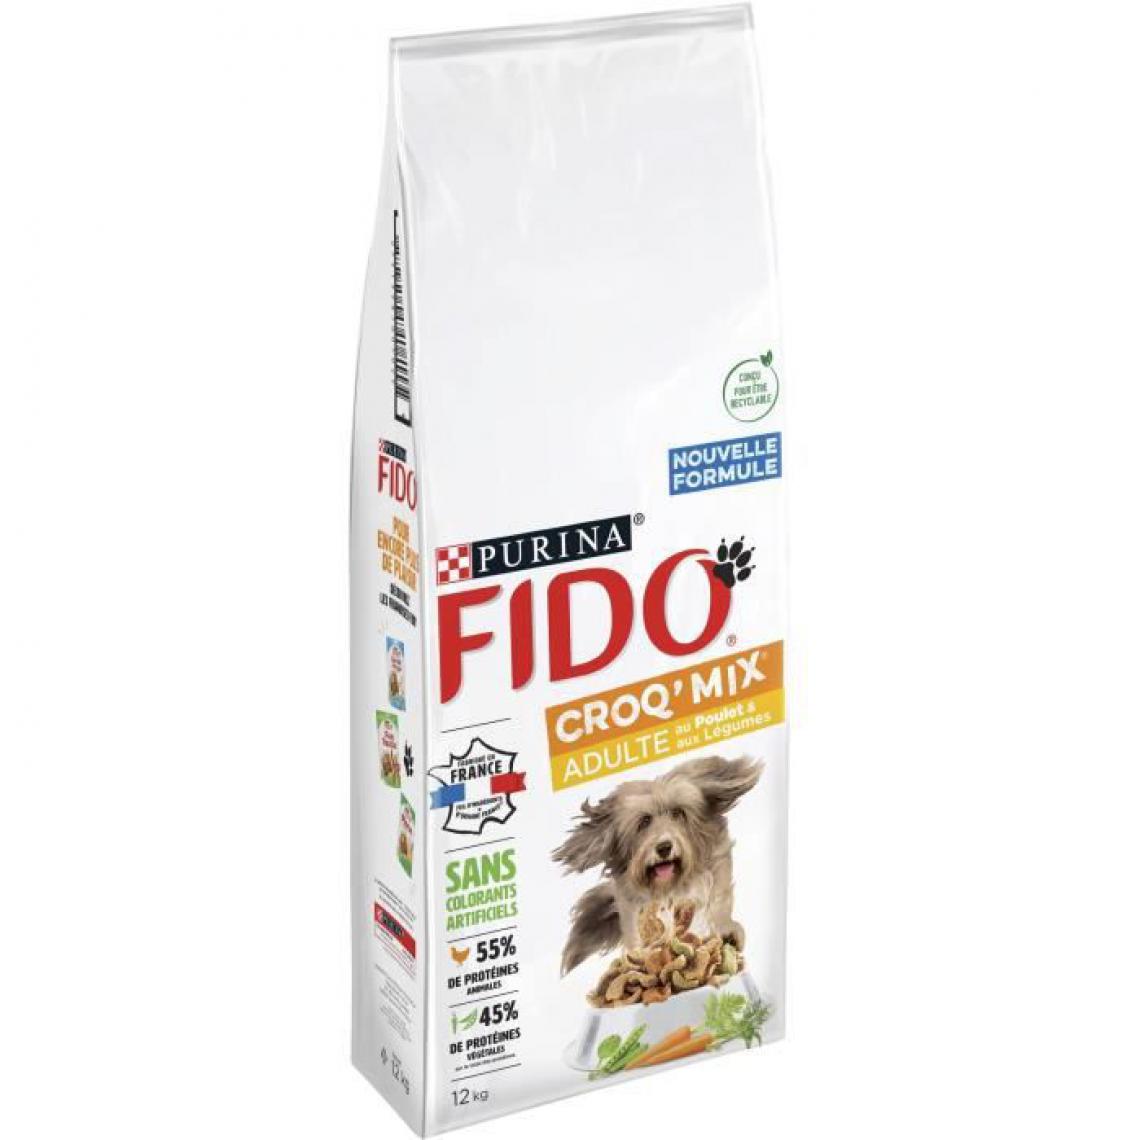 Fido - FIDO Crox'Mix Poulet, Légumes - Pour chien - 12 kg - Croquettes pour chien